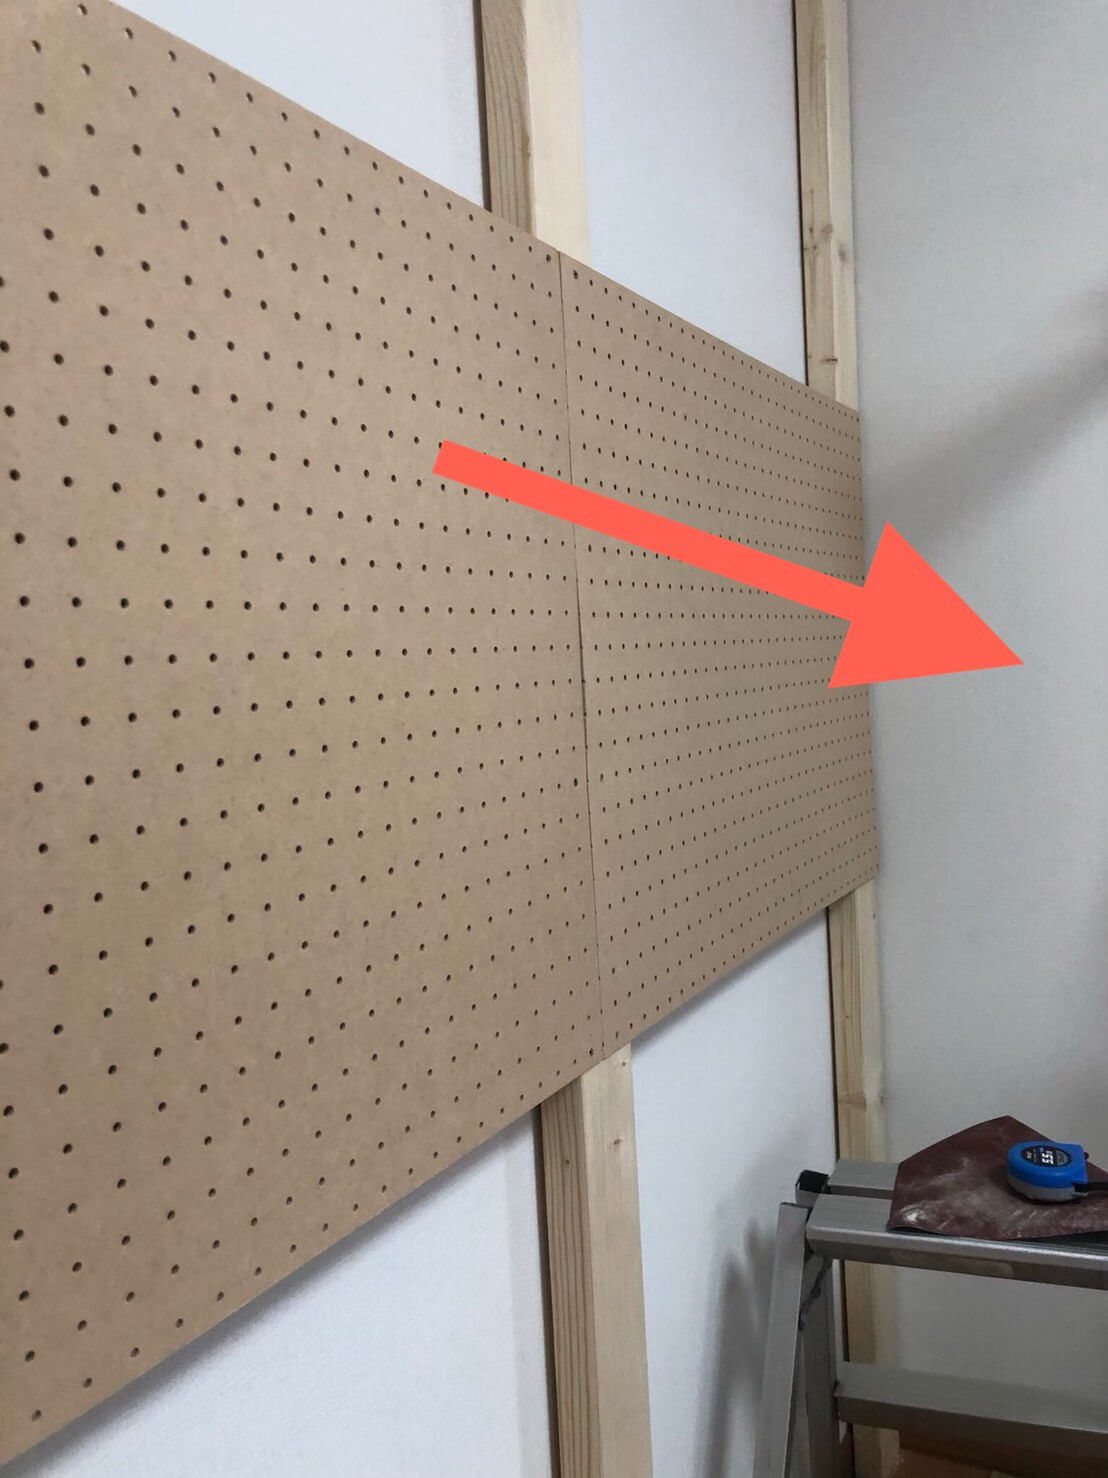 2×4木材を使って作る壁面収納(タモ網置場)